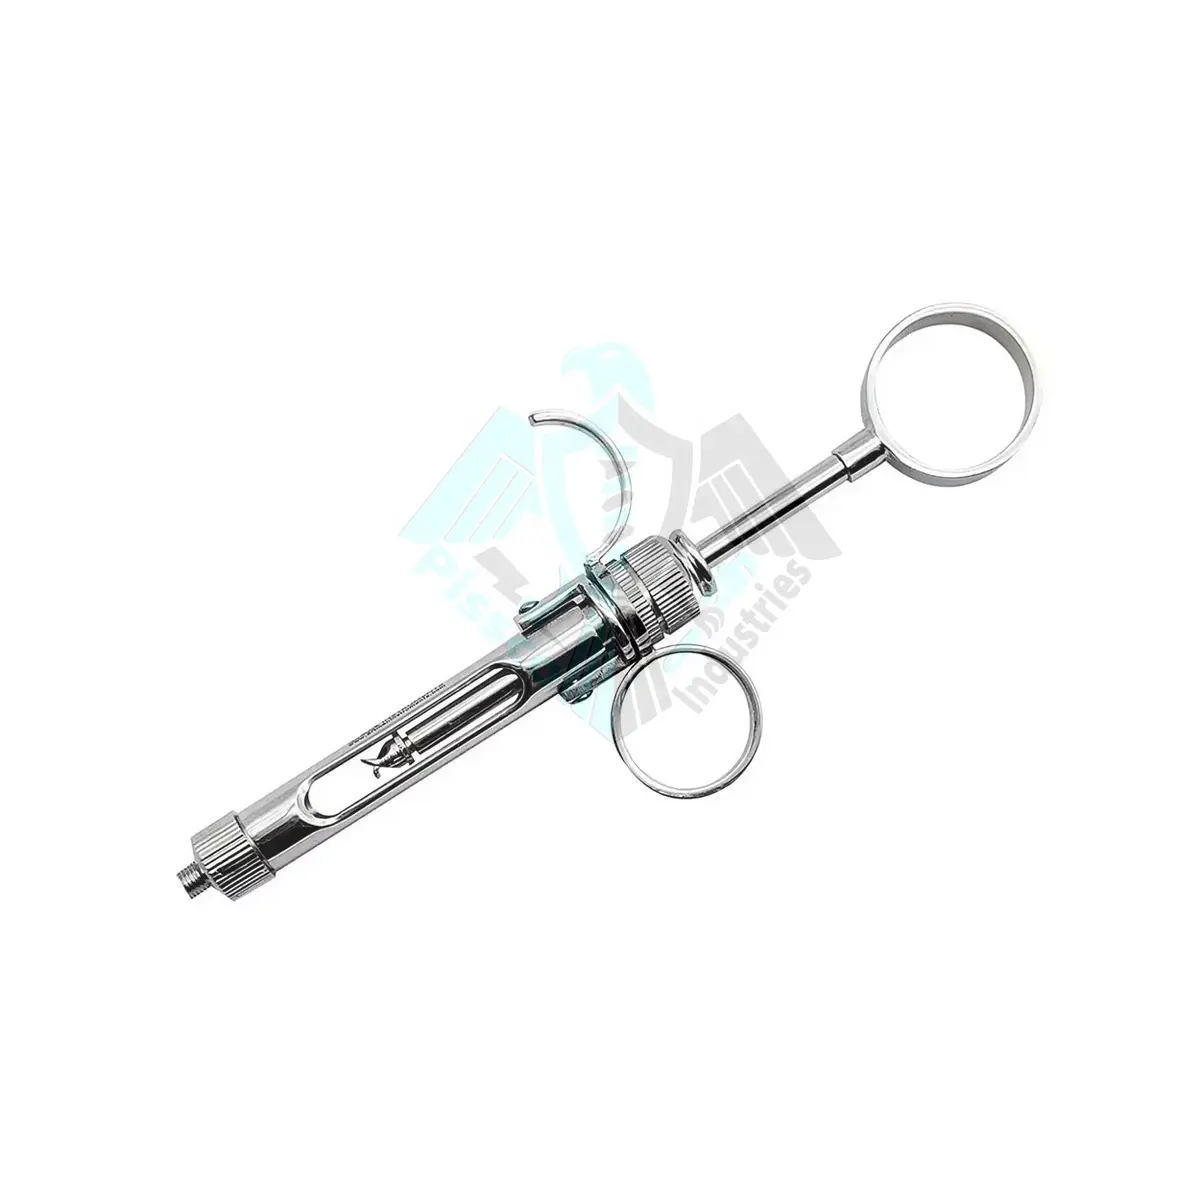 Dental Surgical Manual Aspirating Syringe 1.8ml | Dentistry Anesthesia Carpule Type Syringe